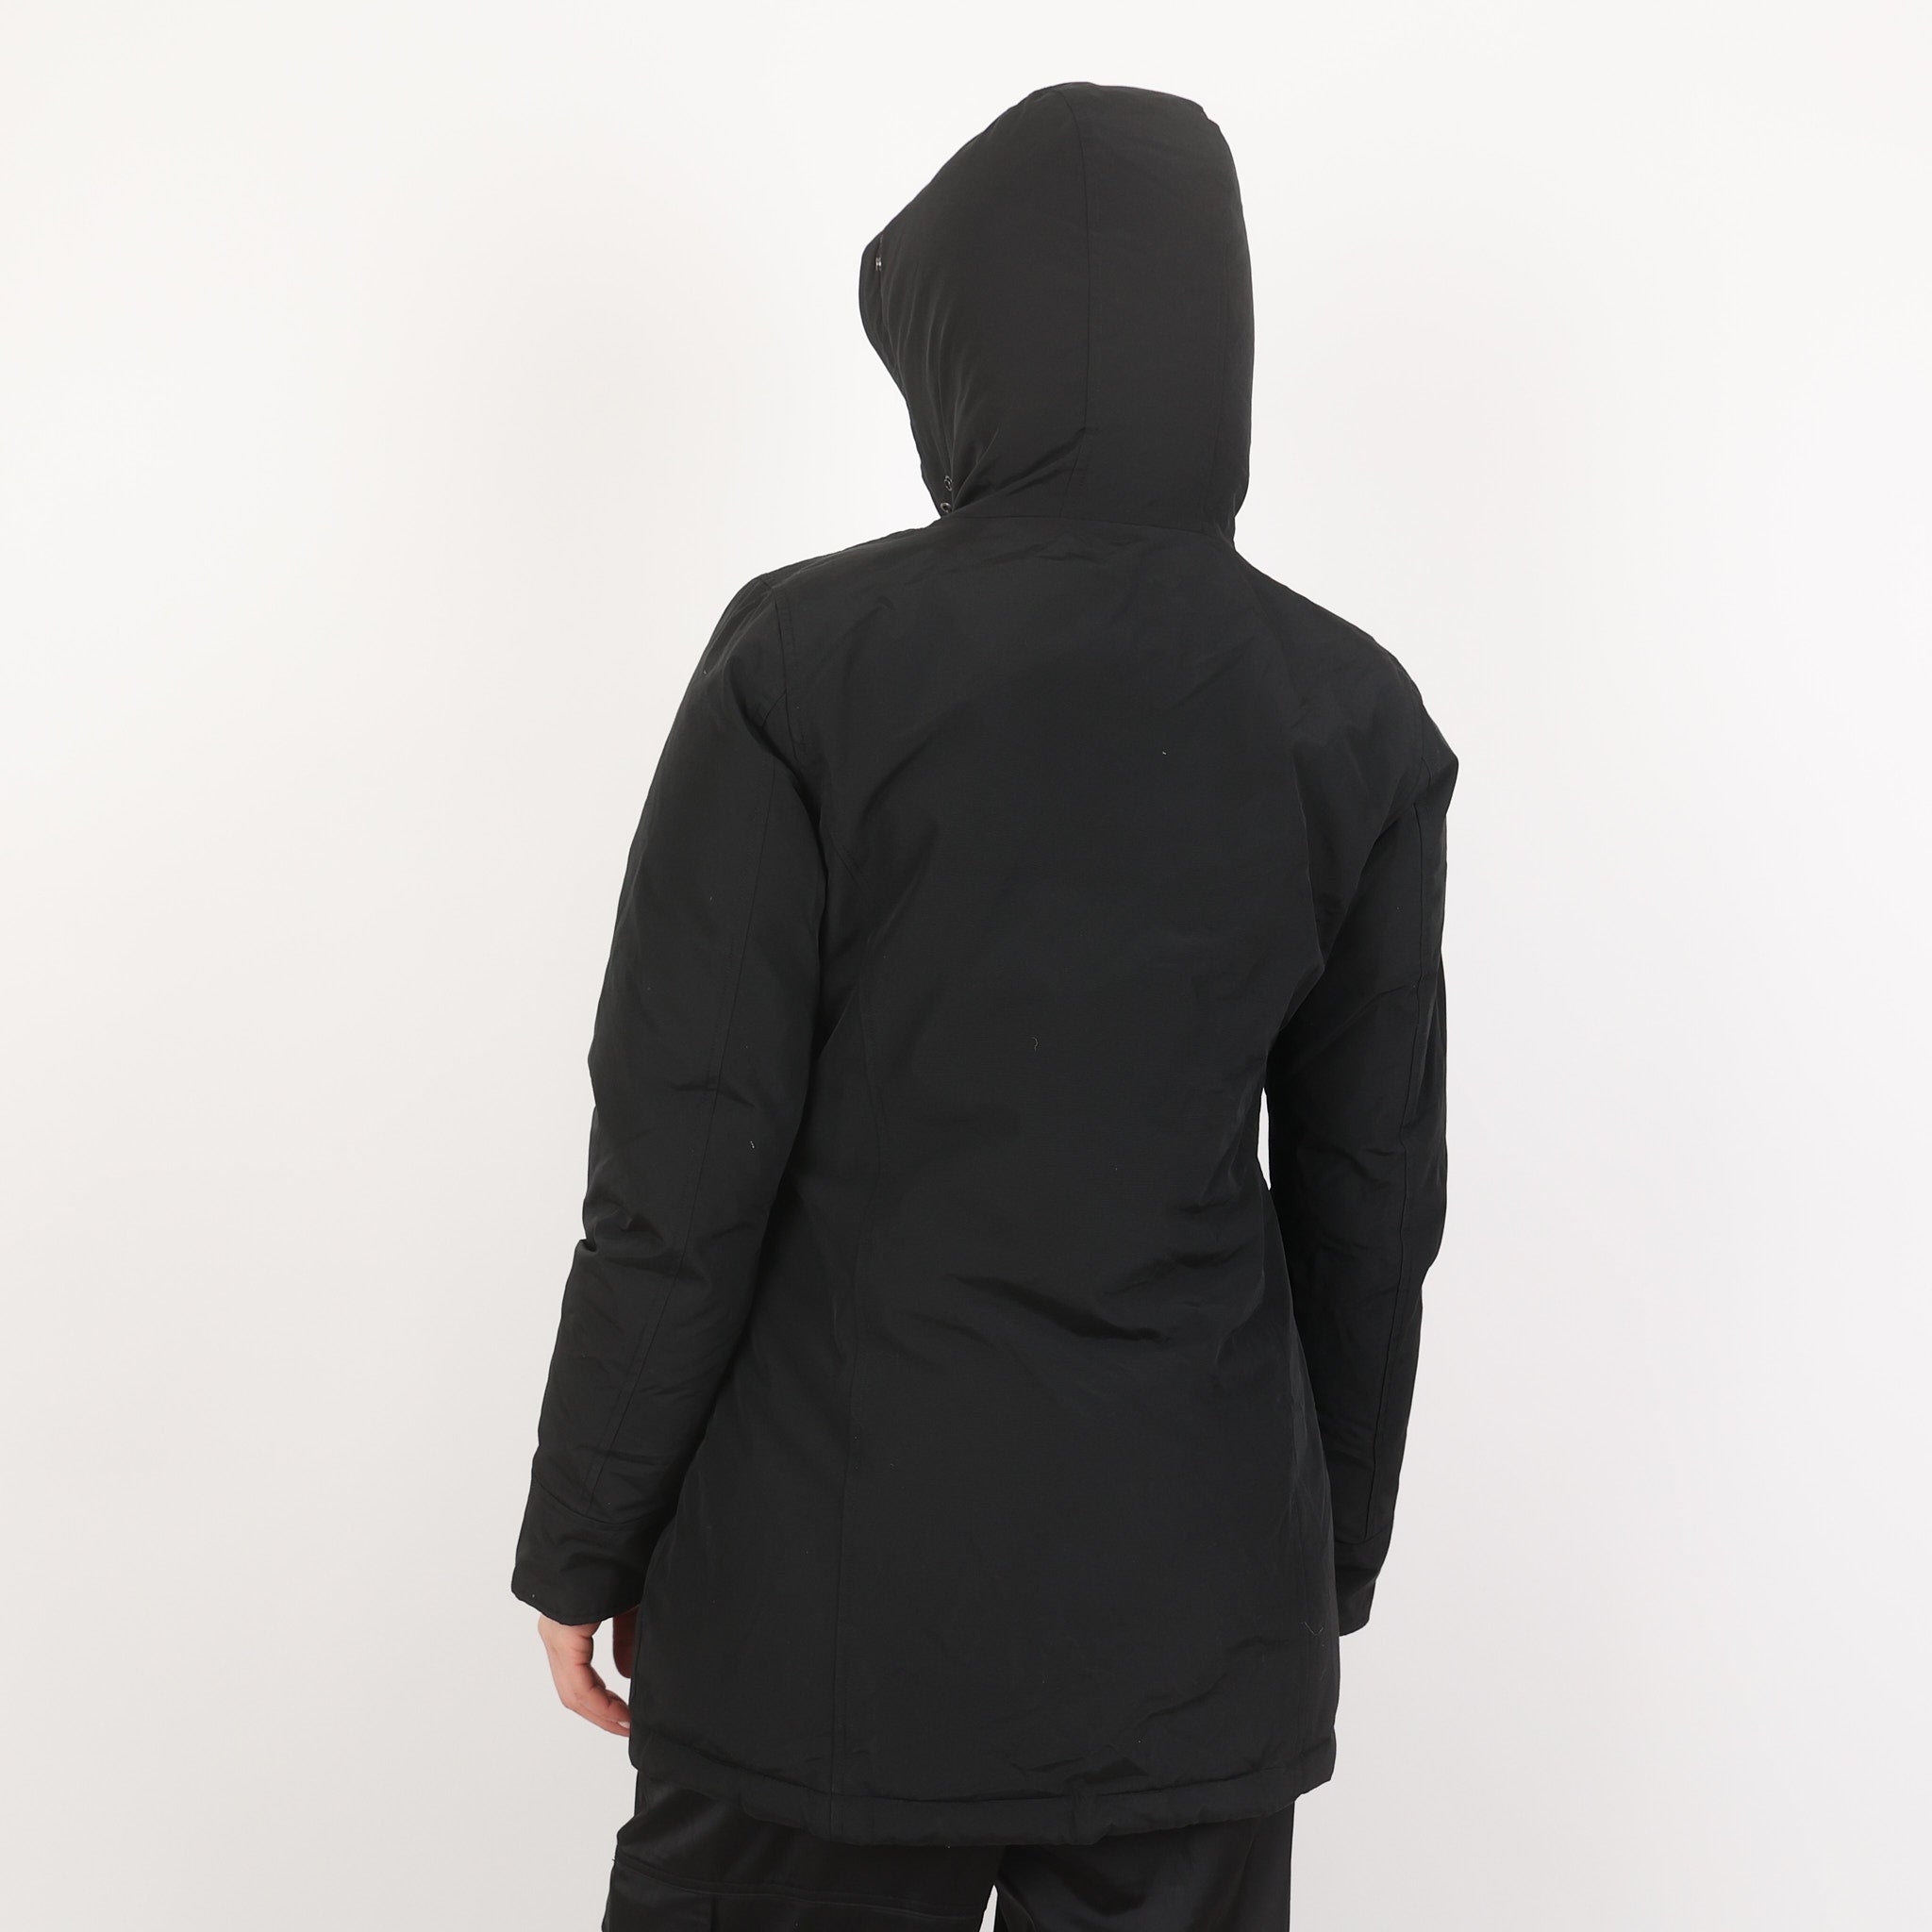 Coat, UK Size 12